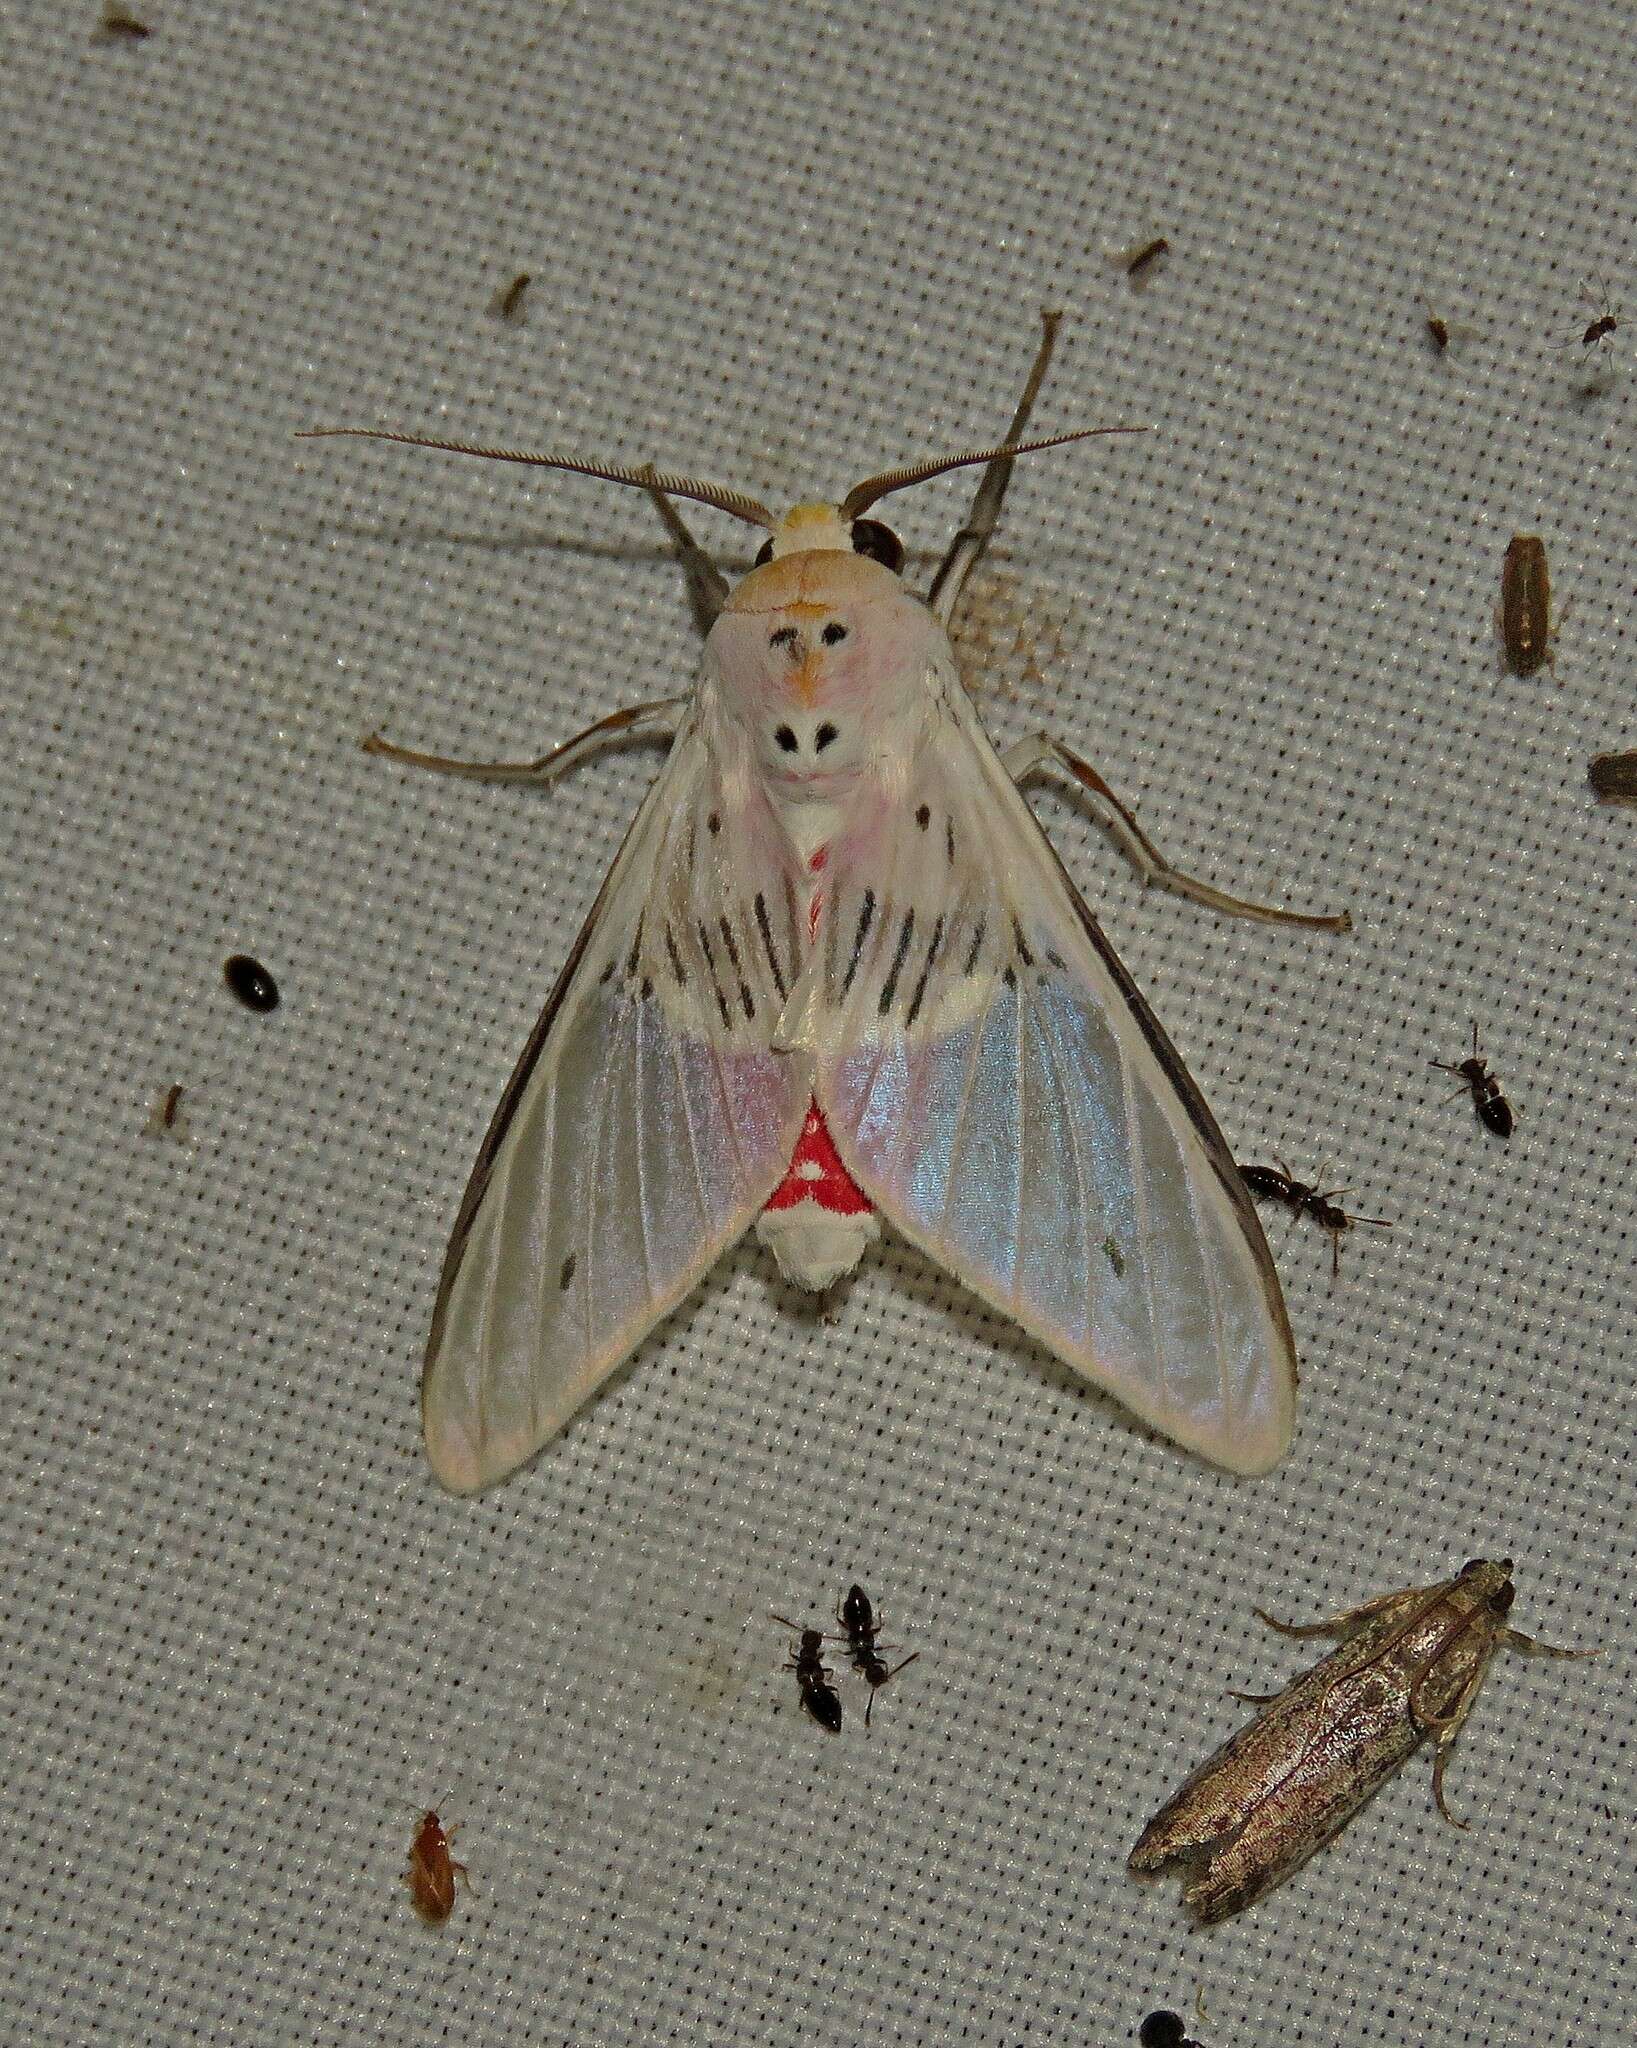 Sivun Idalus aleteria Schaus 1905 kuva